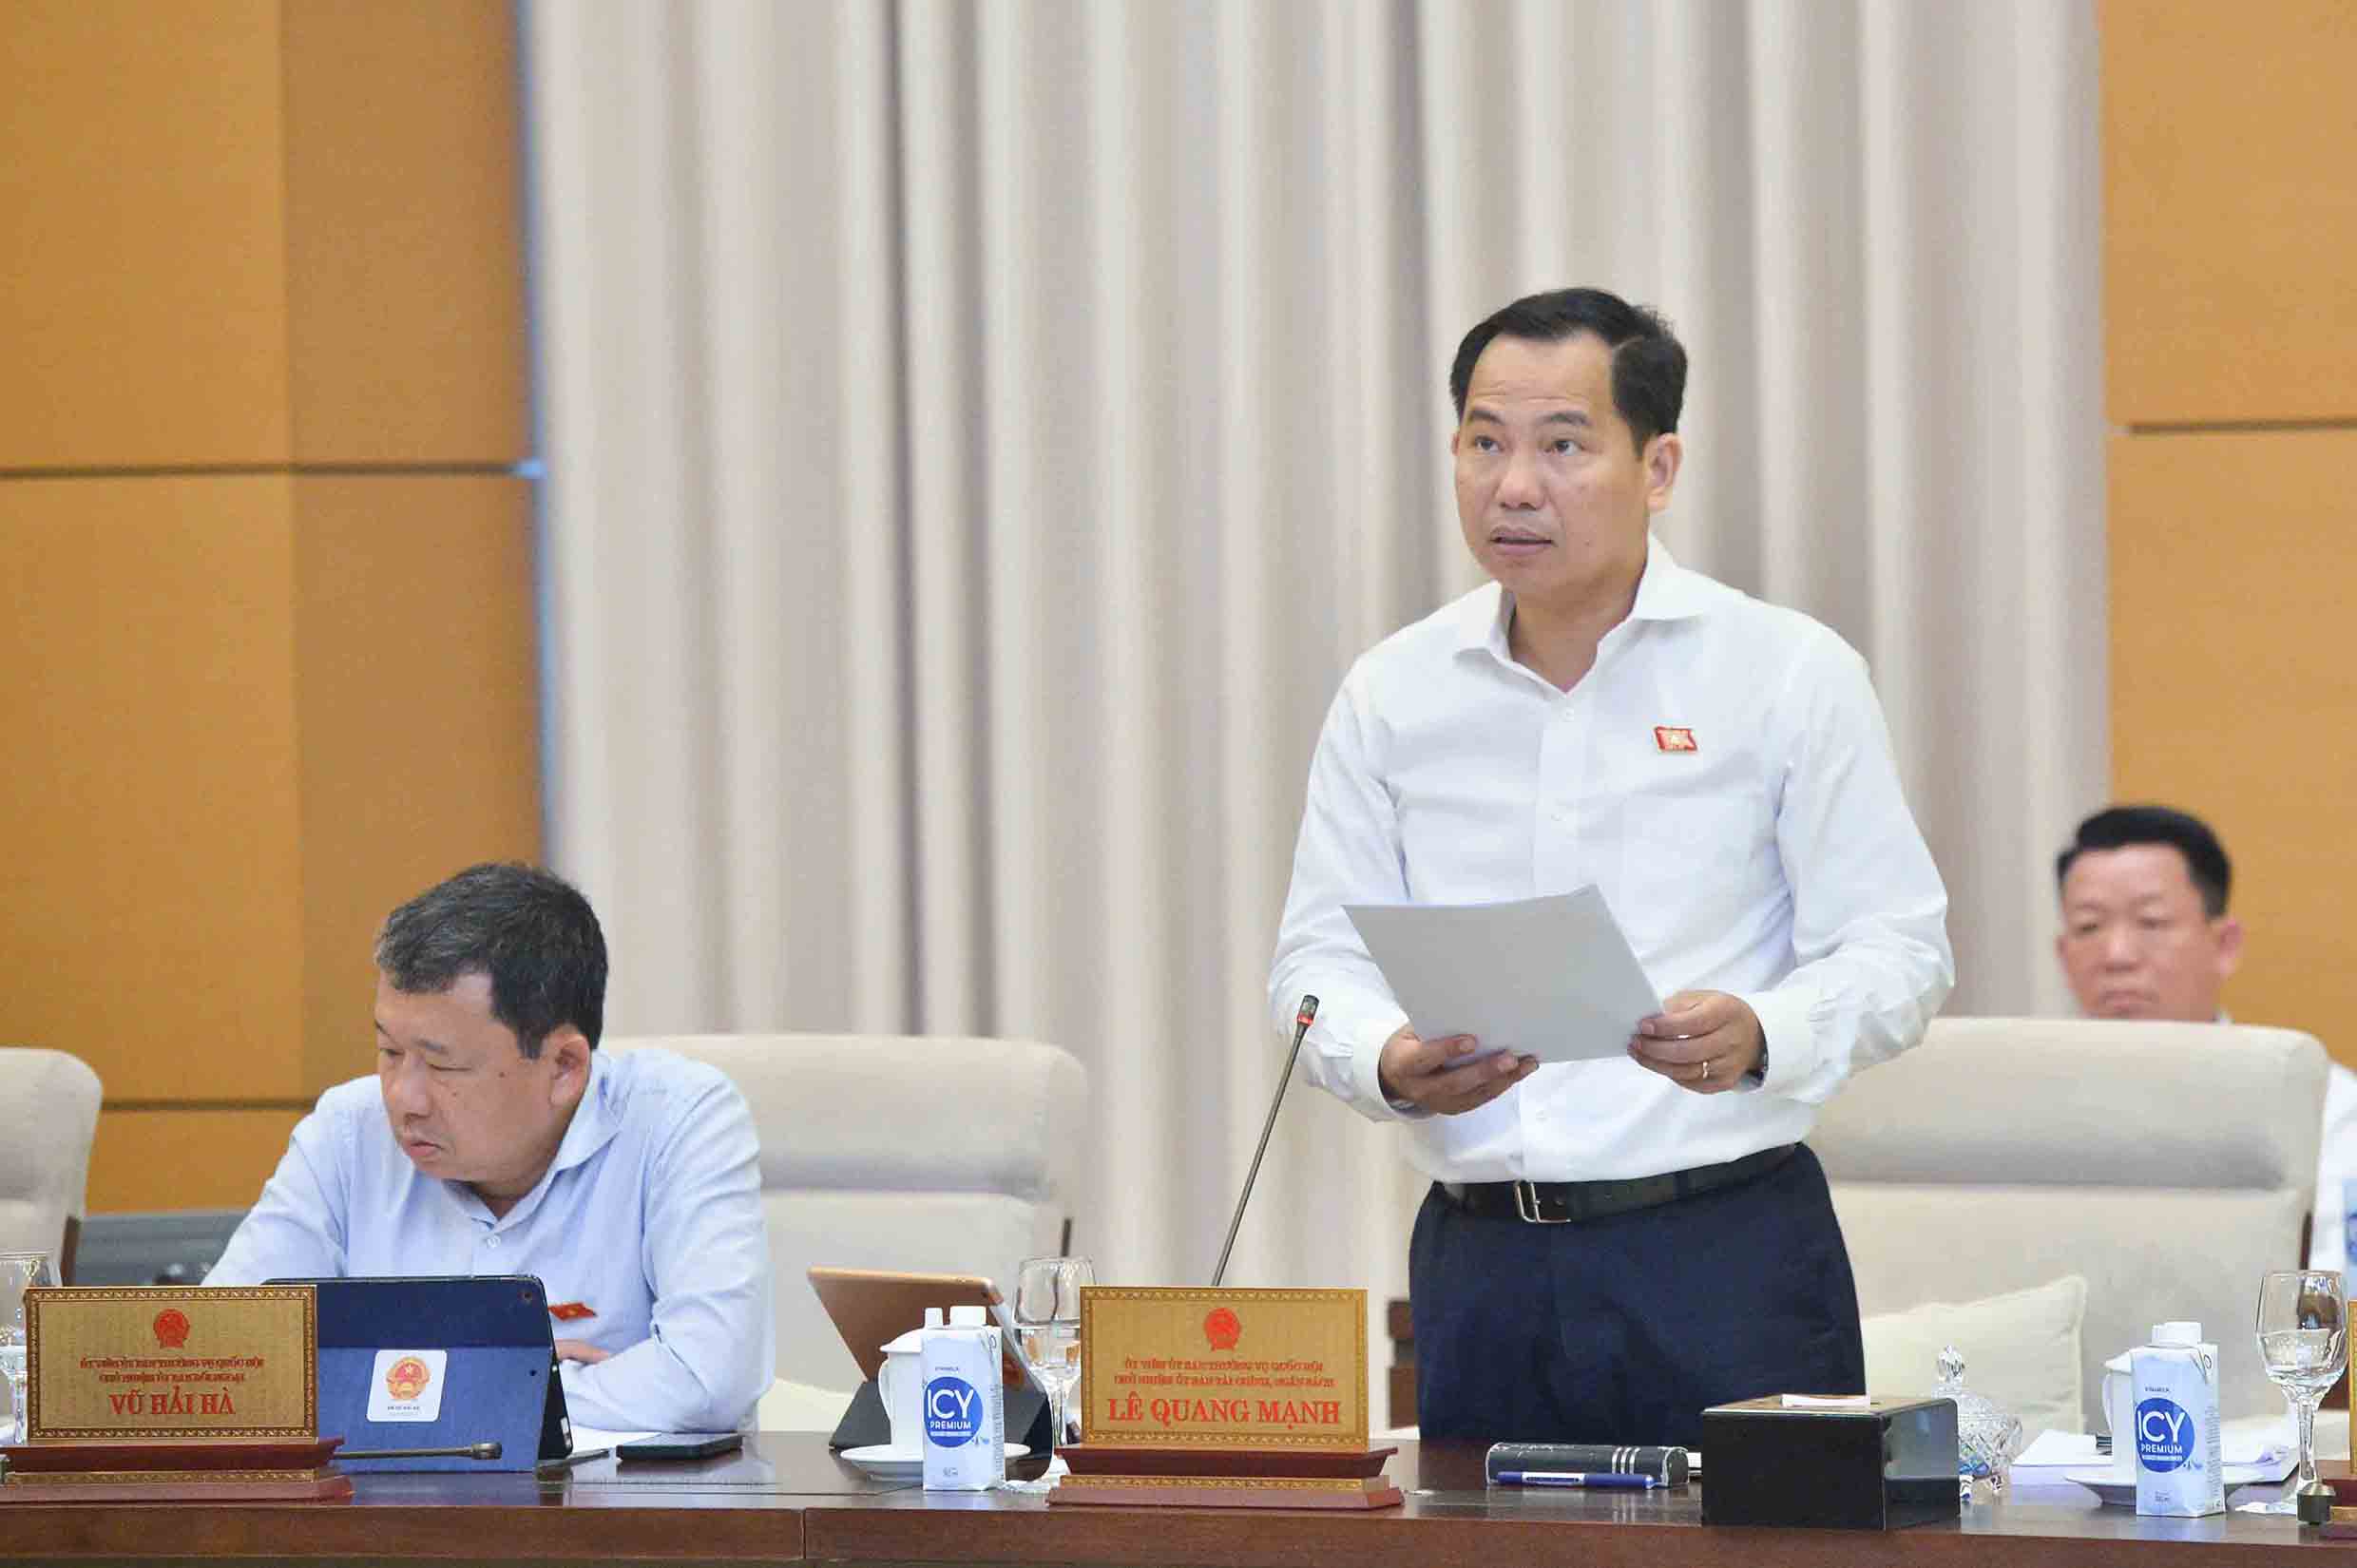 Chủ nhiệm Ủy ban Tài chính - Ngân sách Lê Quang Mạnh báo cáo kết quả giám sát.